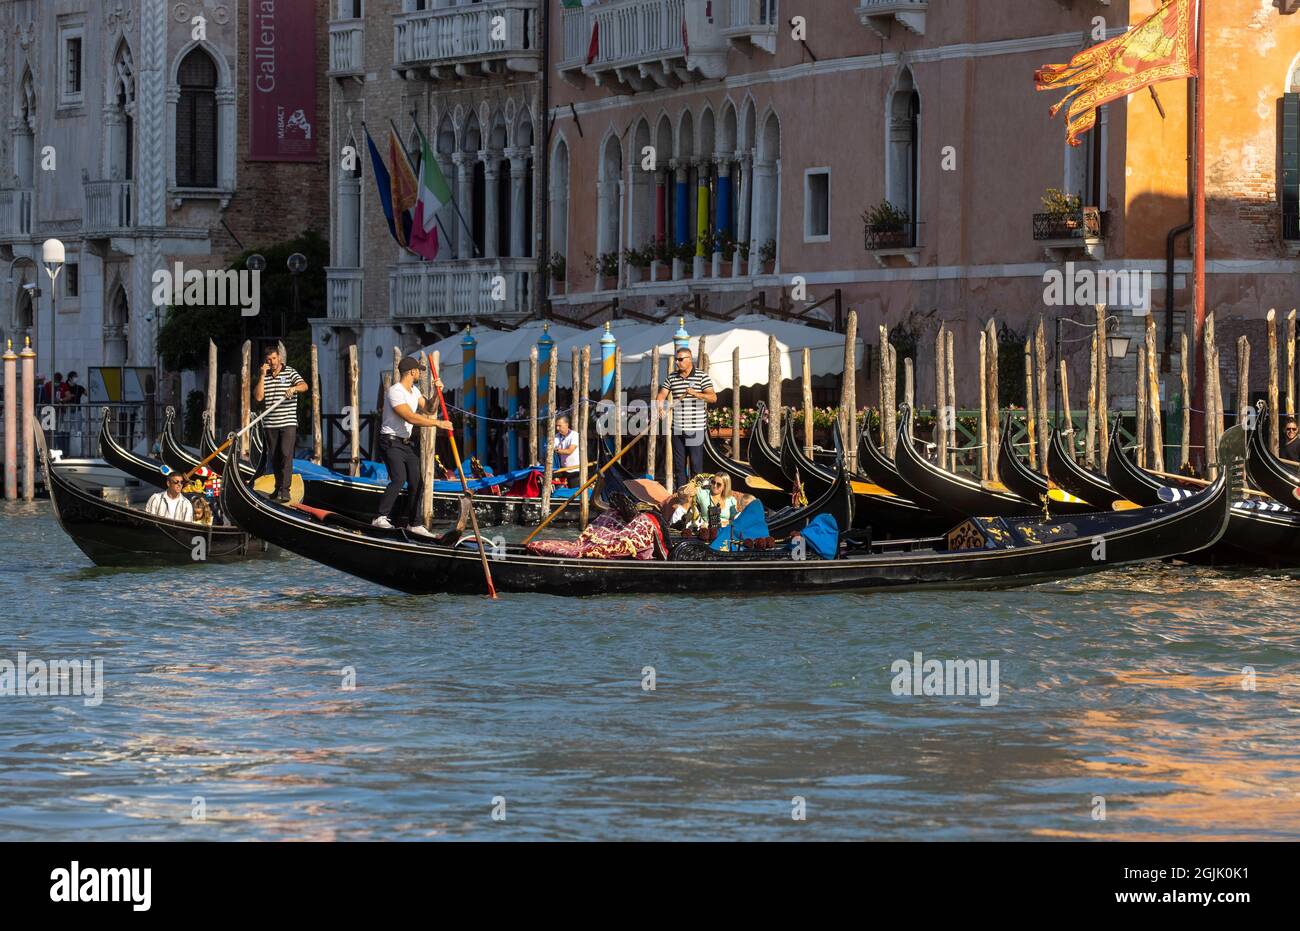 Eine Gondel auf dem Canal Grande in Venedig, die bei San Marco in die Lagune führt. Touristen genießen die wunderschöne Architektur Venedigs von einer Gondel aus. Stockfoto